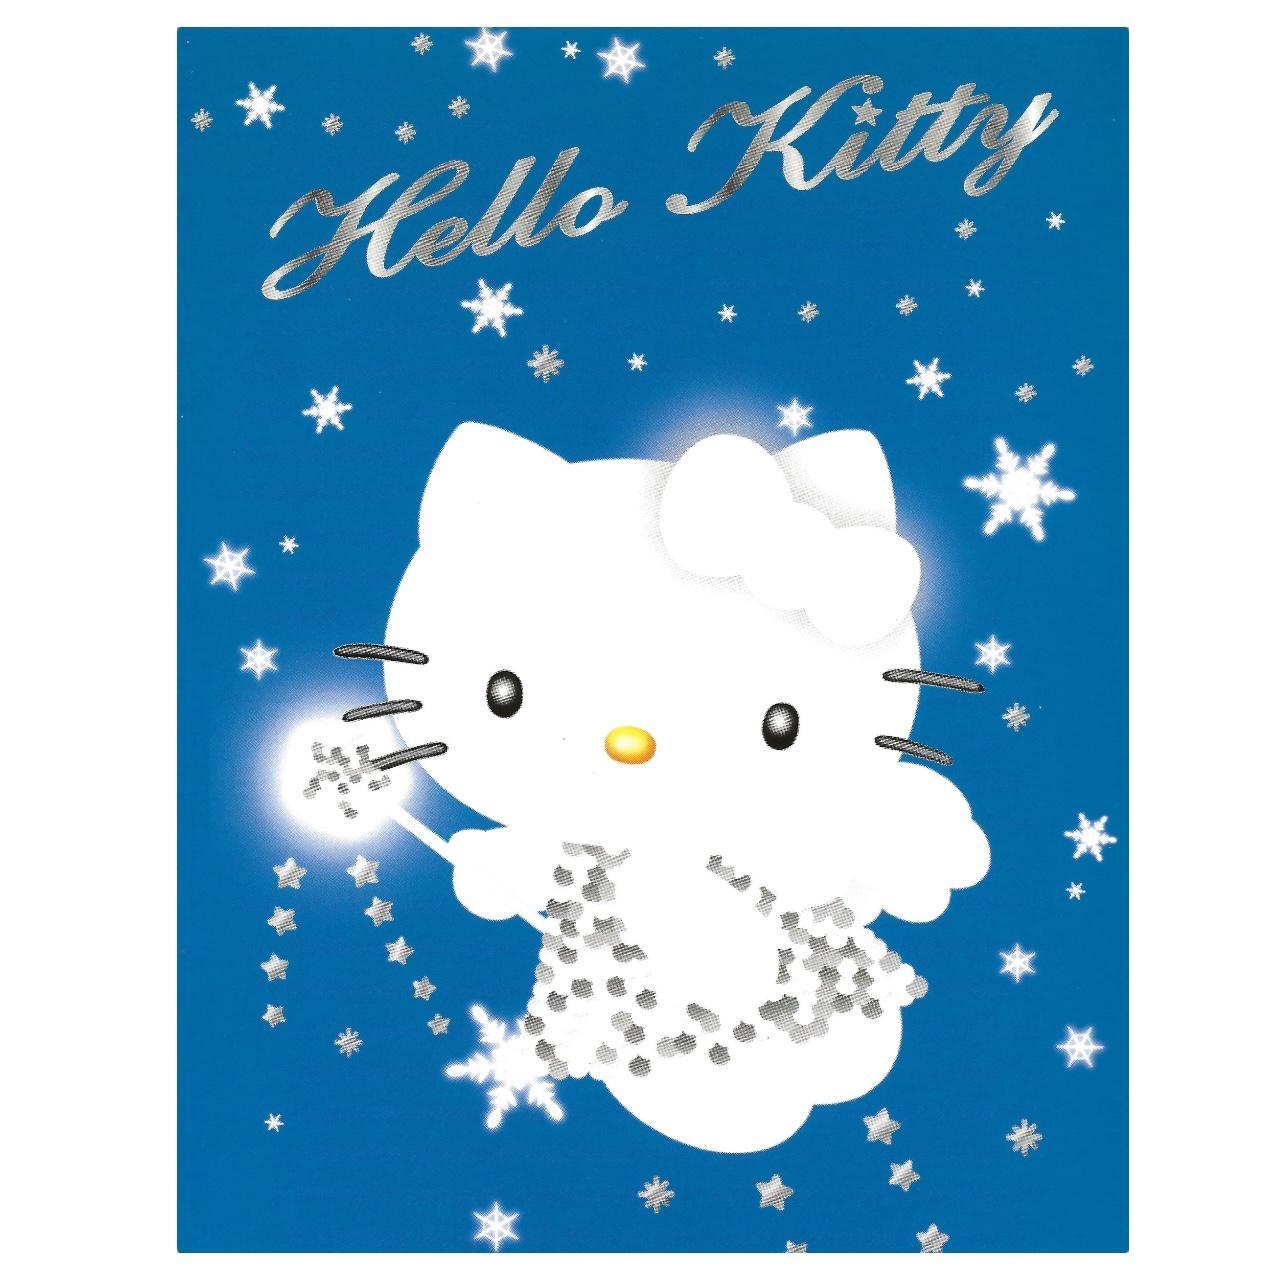 1999 Sanrio Hello Kitty Rare Art Post Card